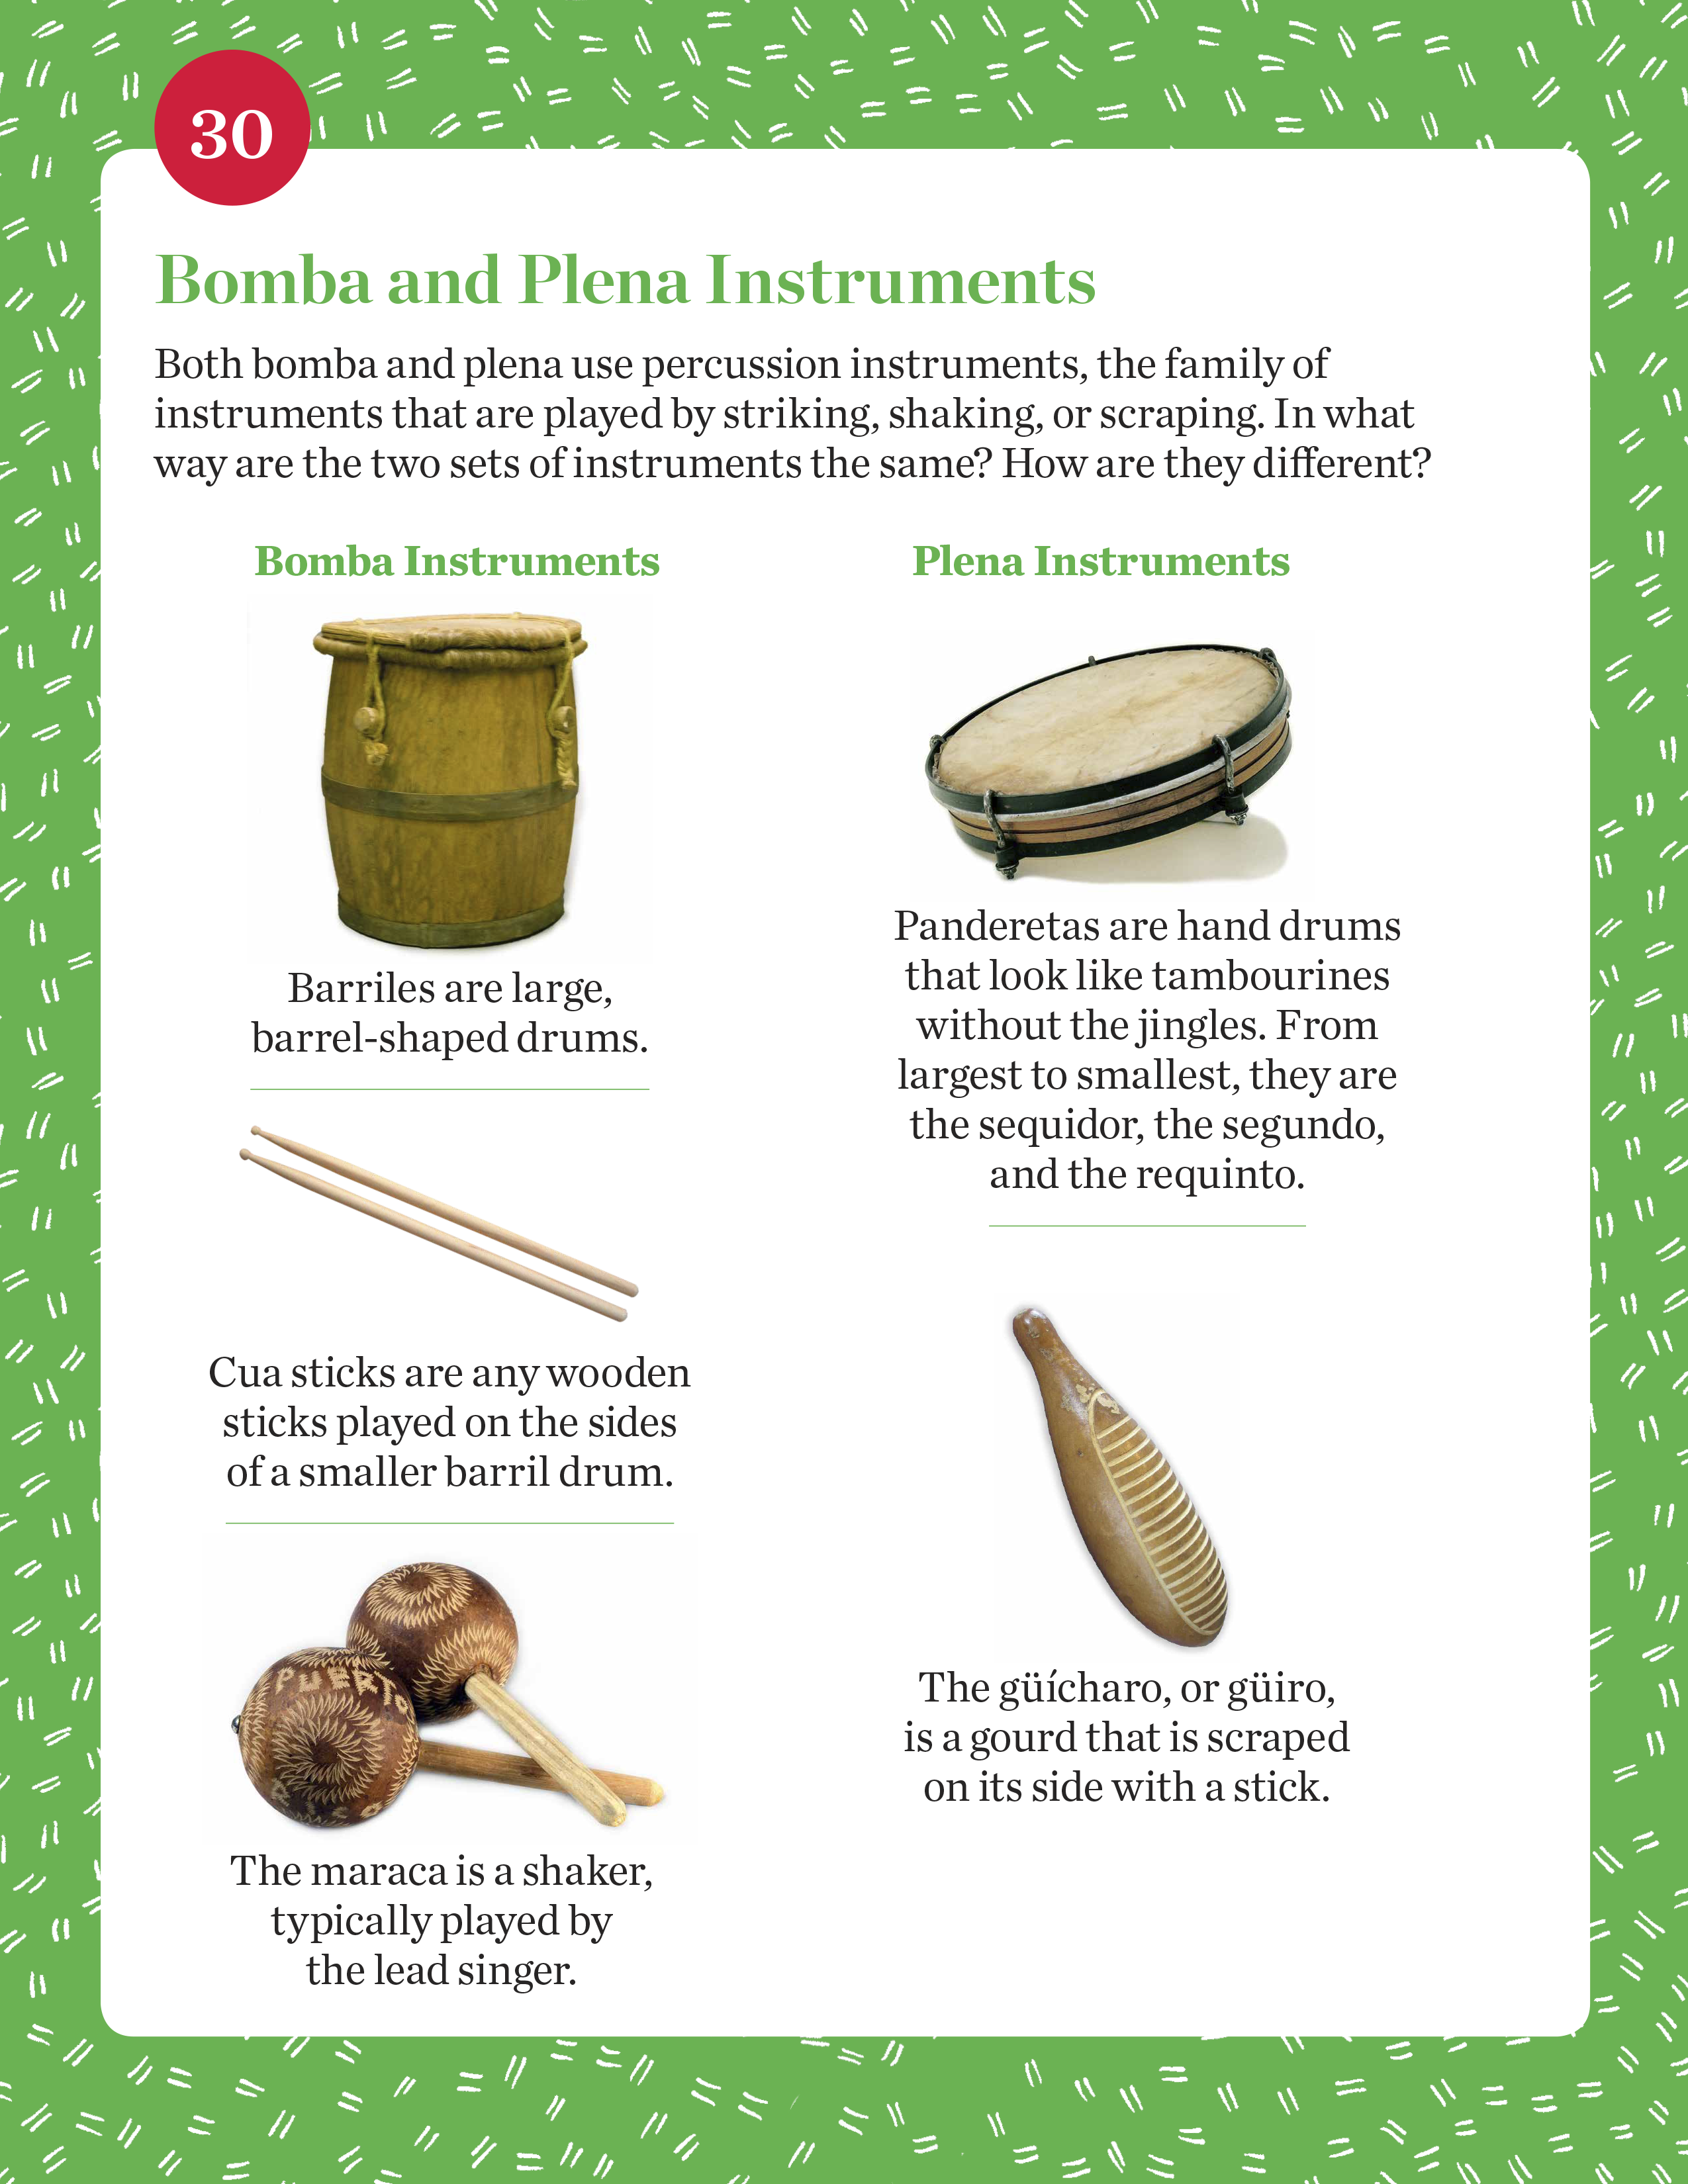 Bomba and Plena Instruments